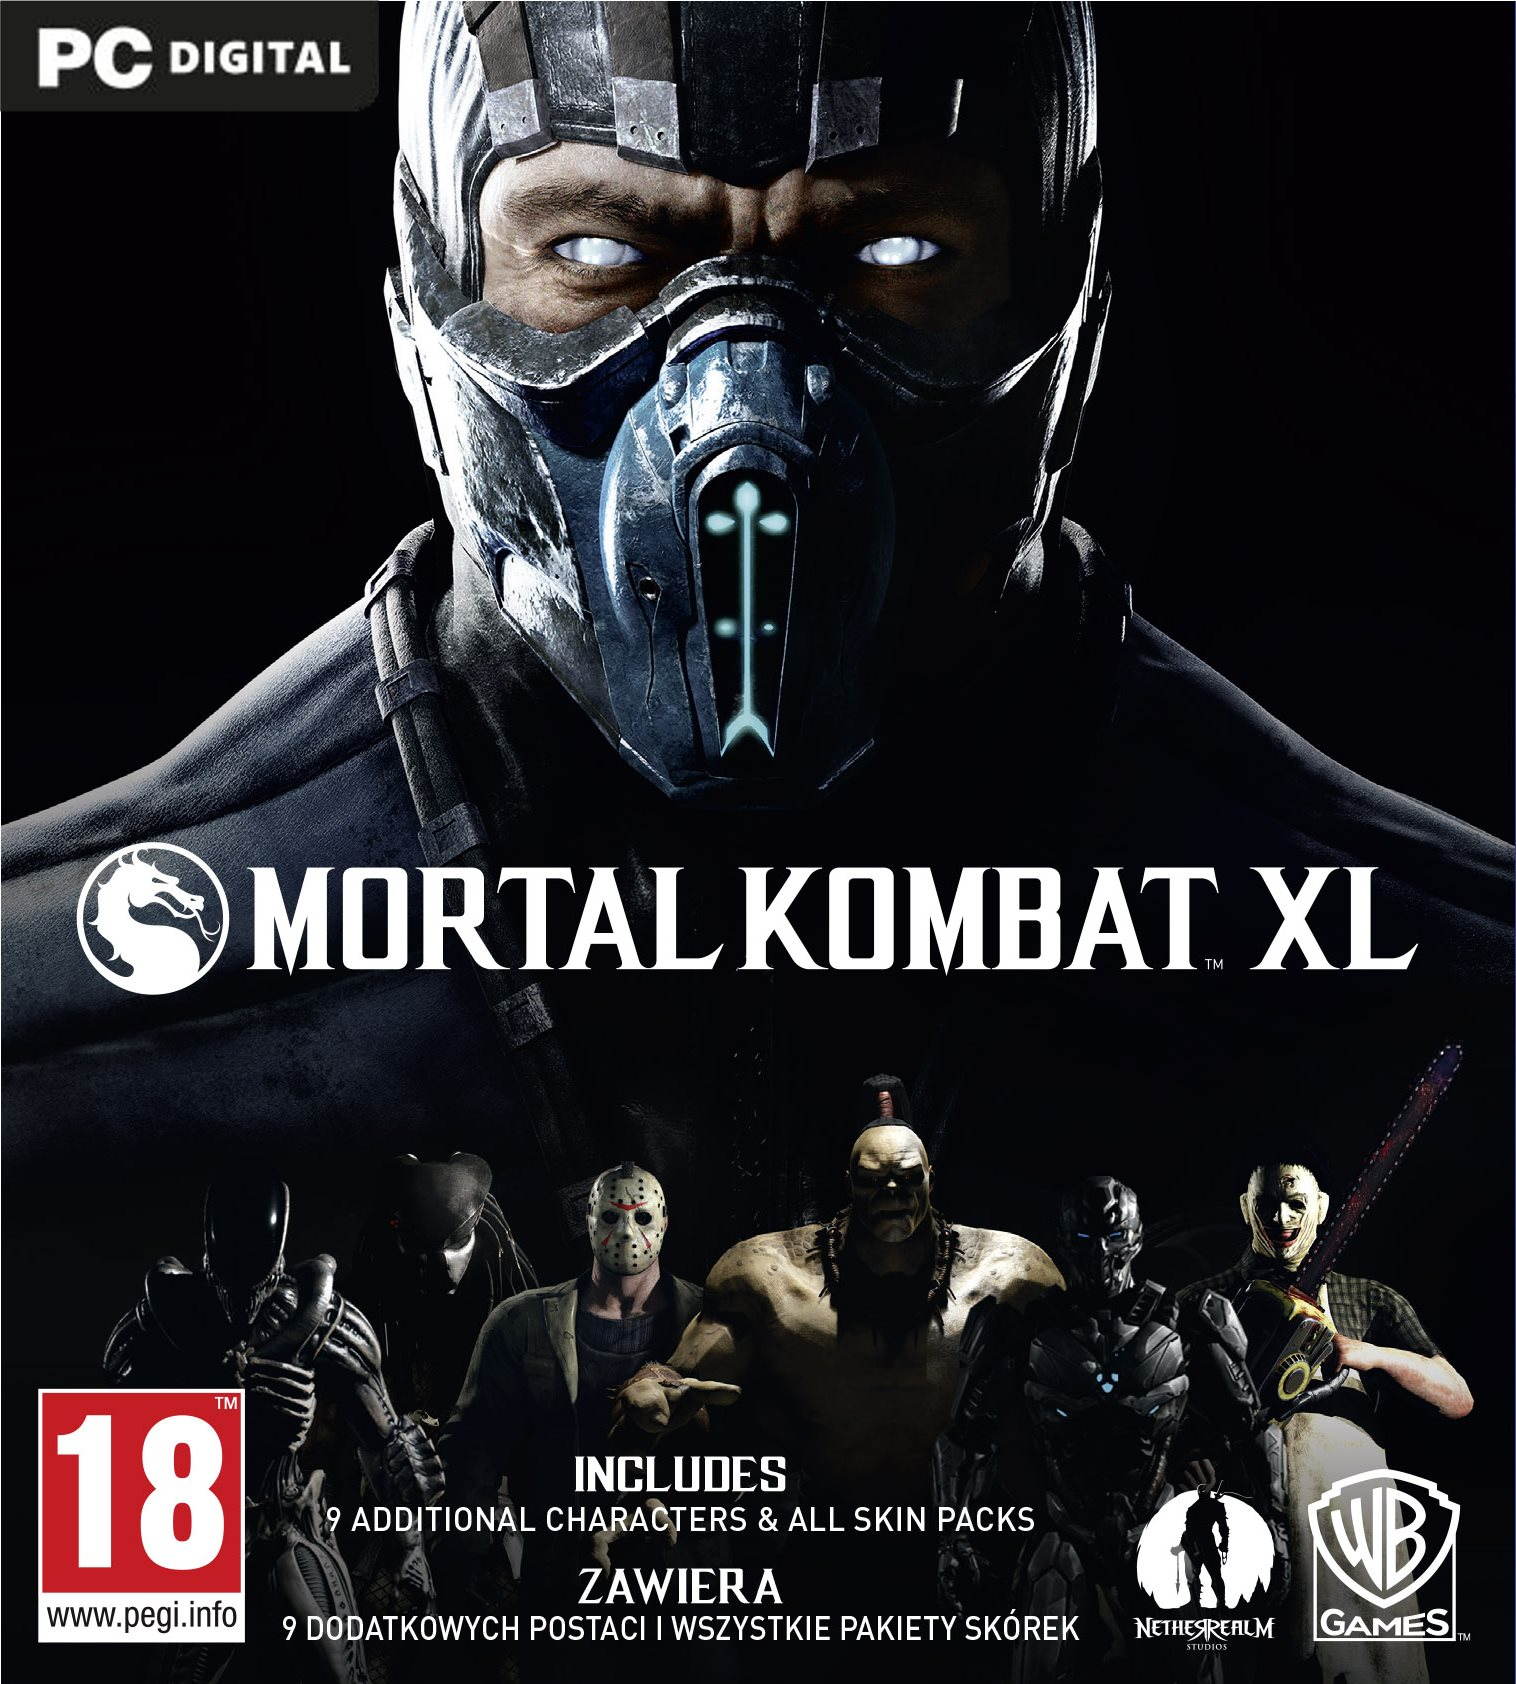 PC játék Mortal Kombat XL - PC DIGITAL